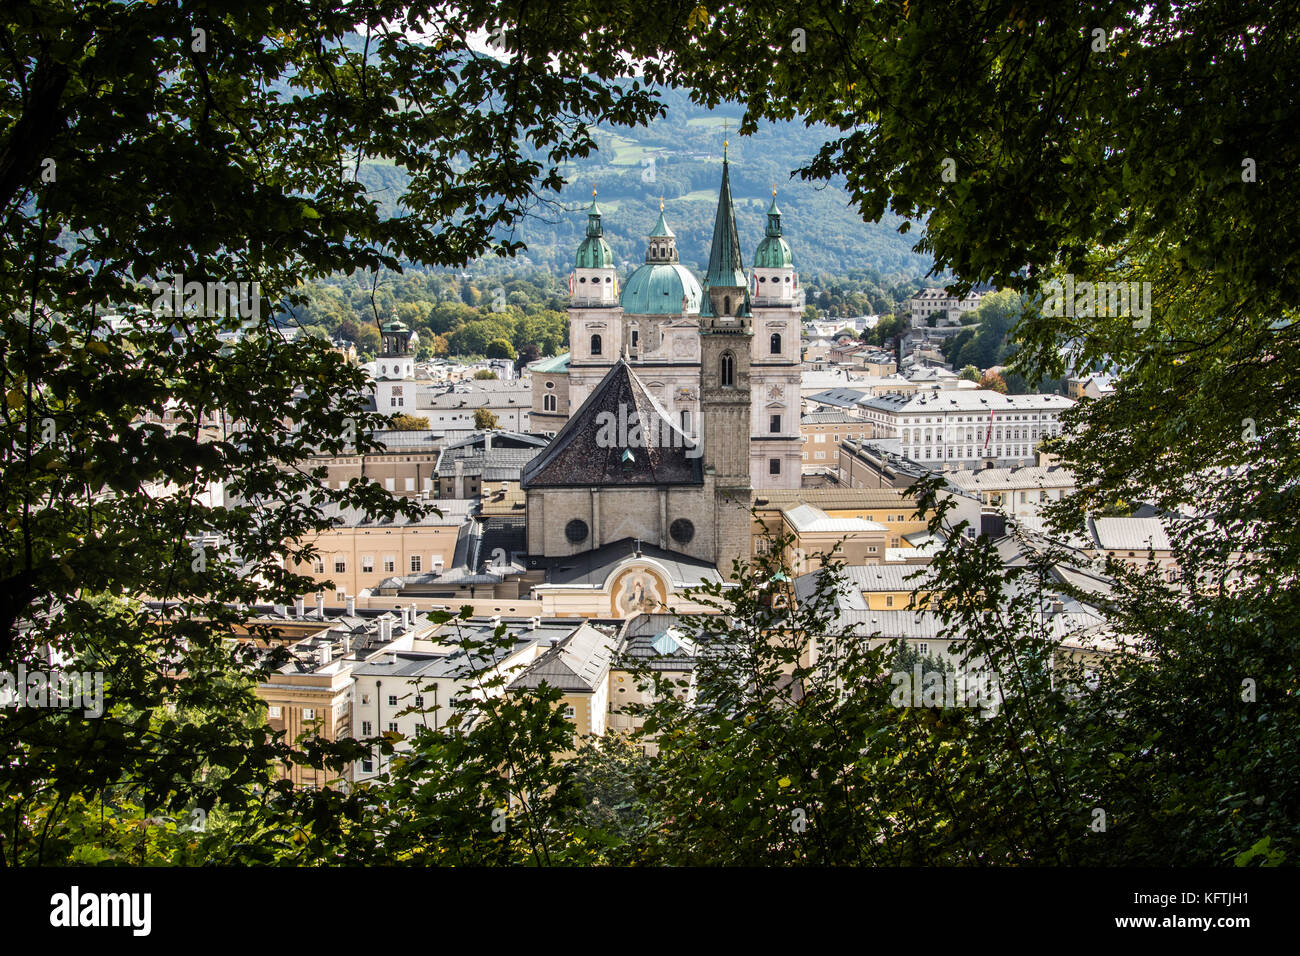 Vieille ville de Salzbourg, Autriche Banque D'Images